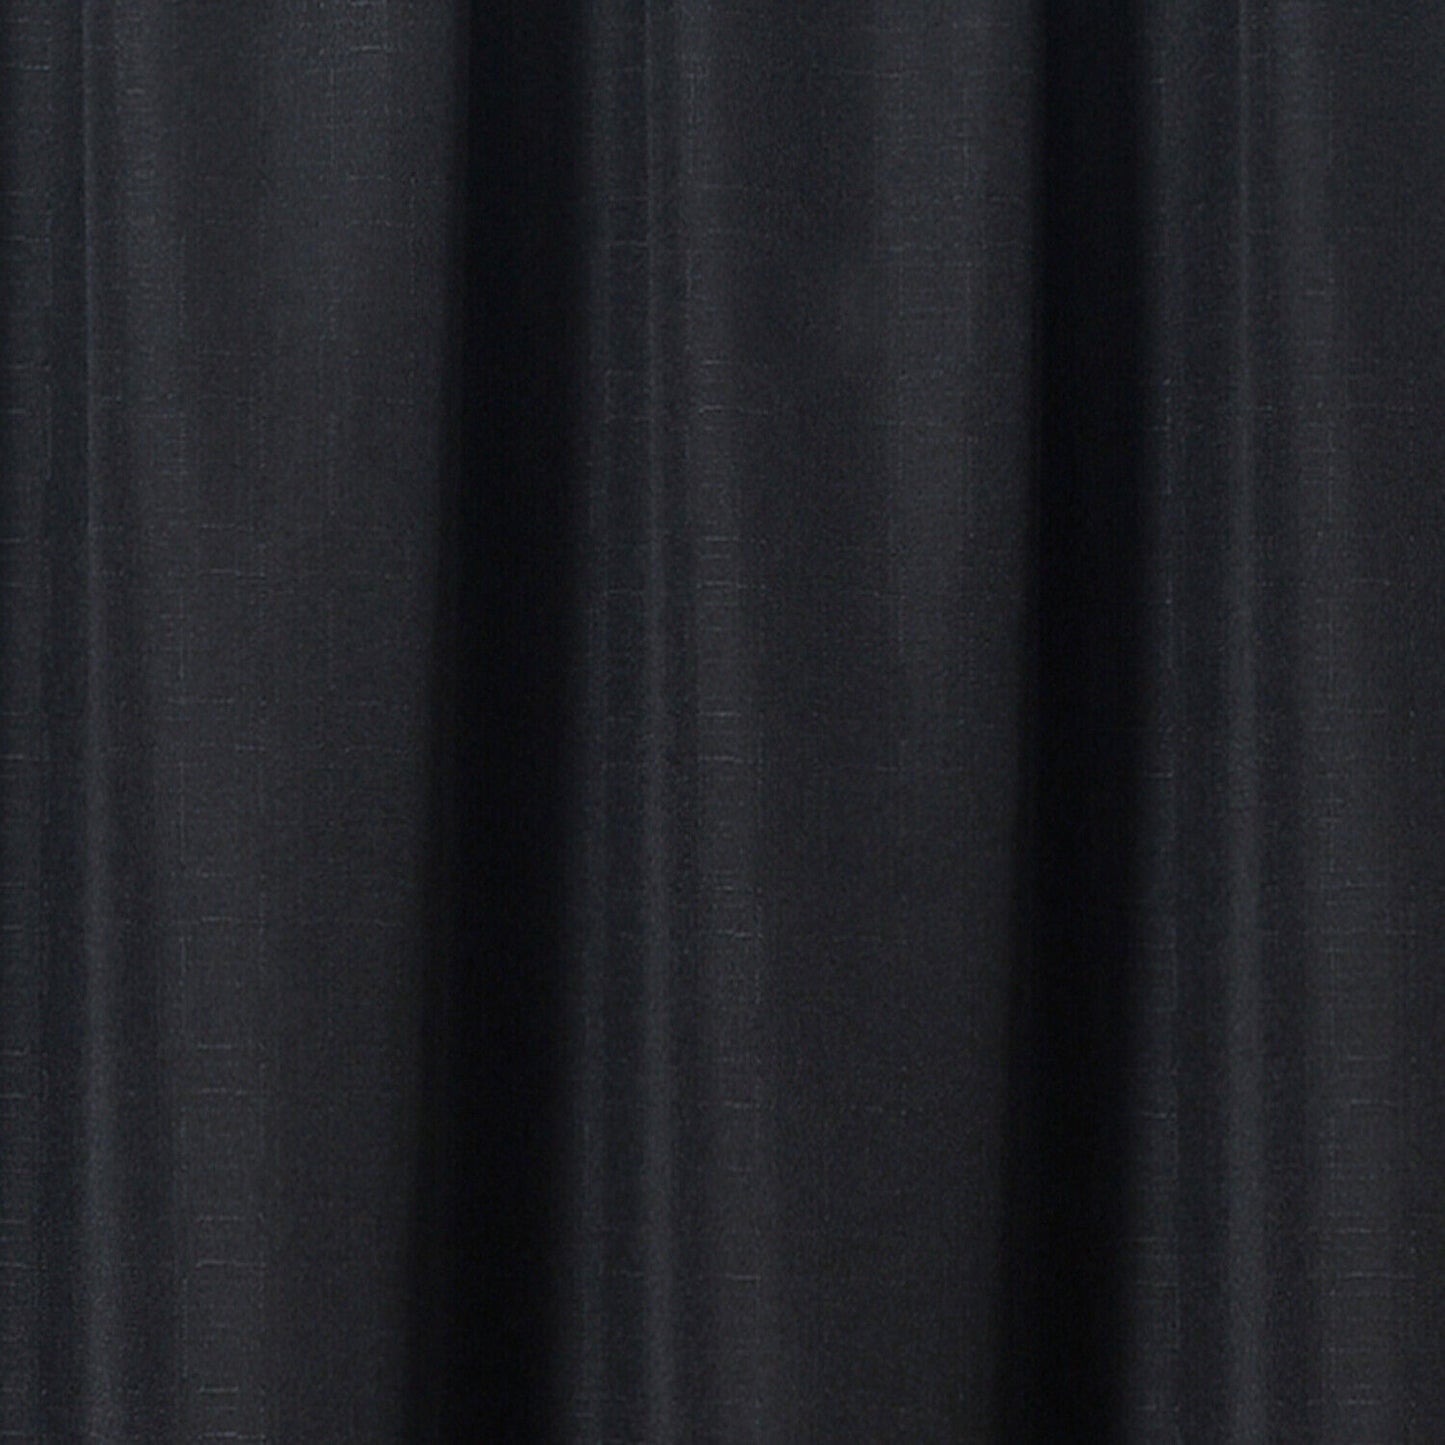 Linen Look Voile 59" x 72" Black Window Curtain Drapes Textured Plain Slot Top